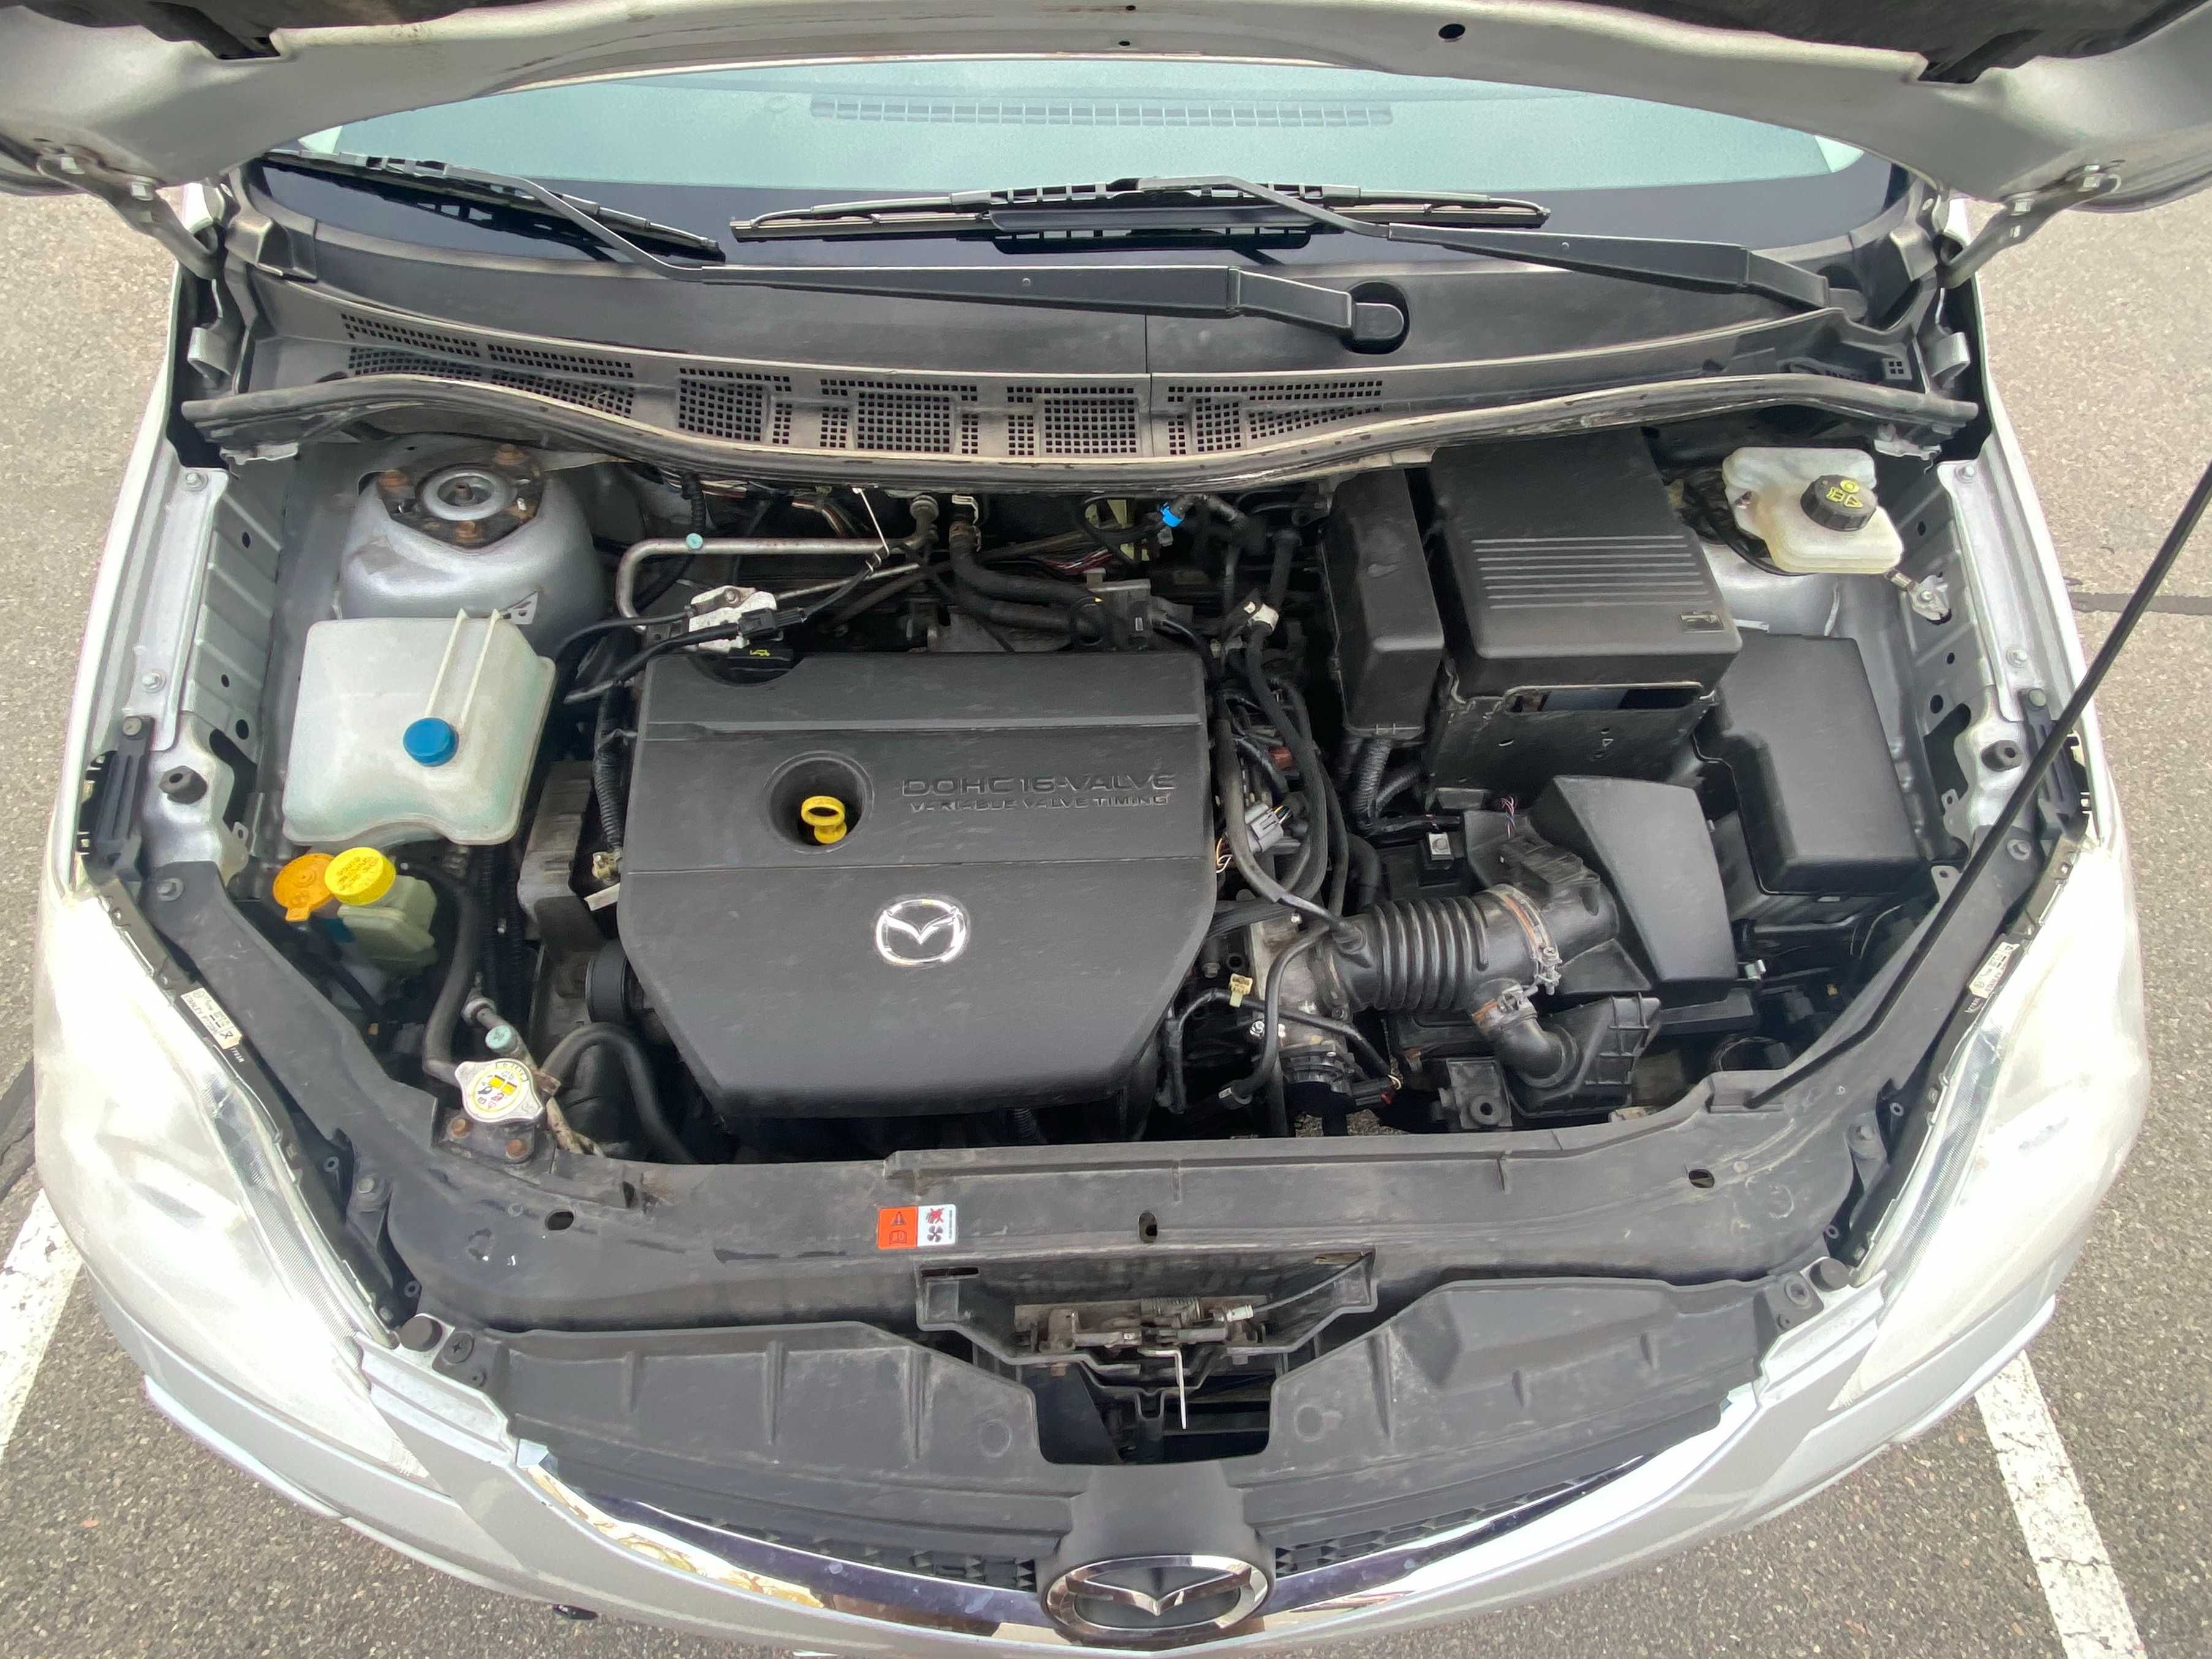 Mazda 5. 2010 год. 2,0 бензин. 6-ступенчатая МКПП. 7 мест. Из Европы.